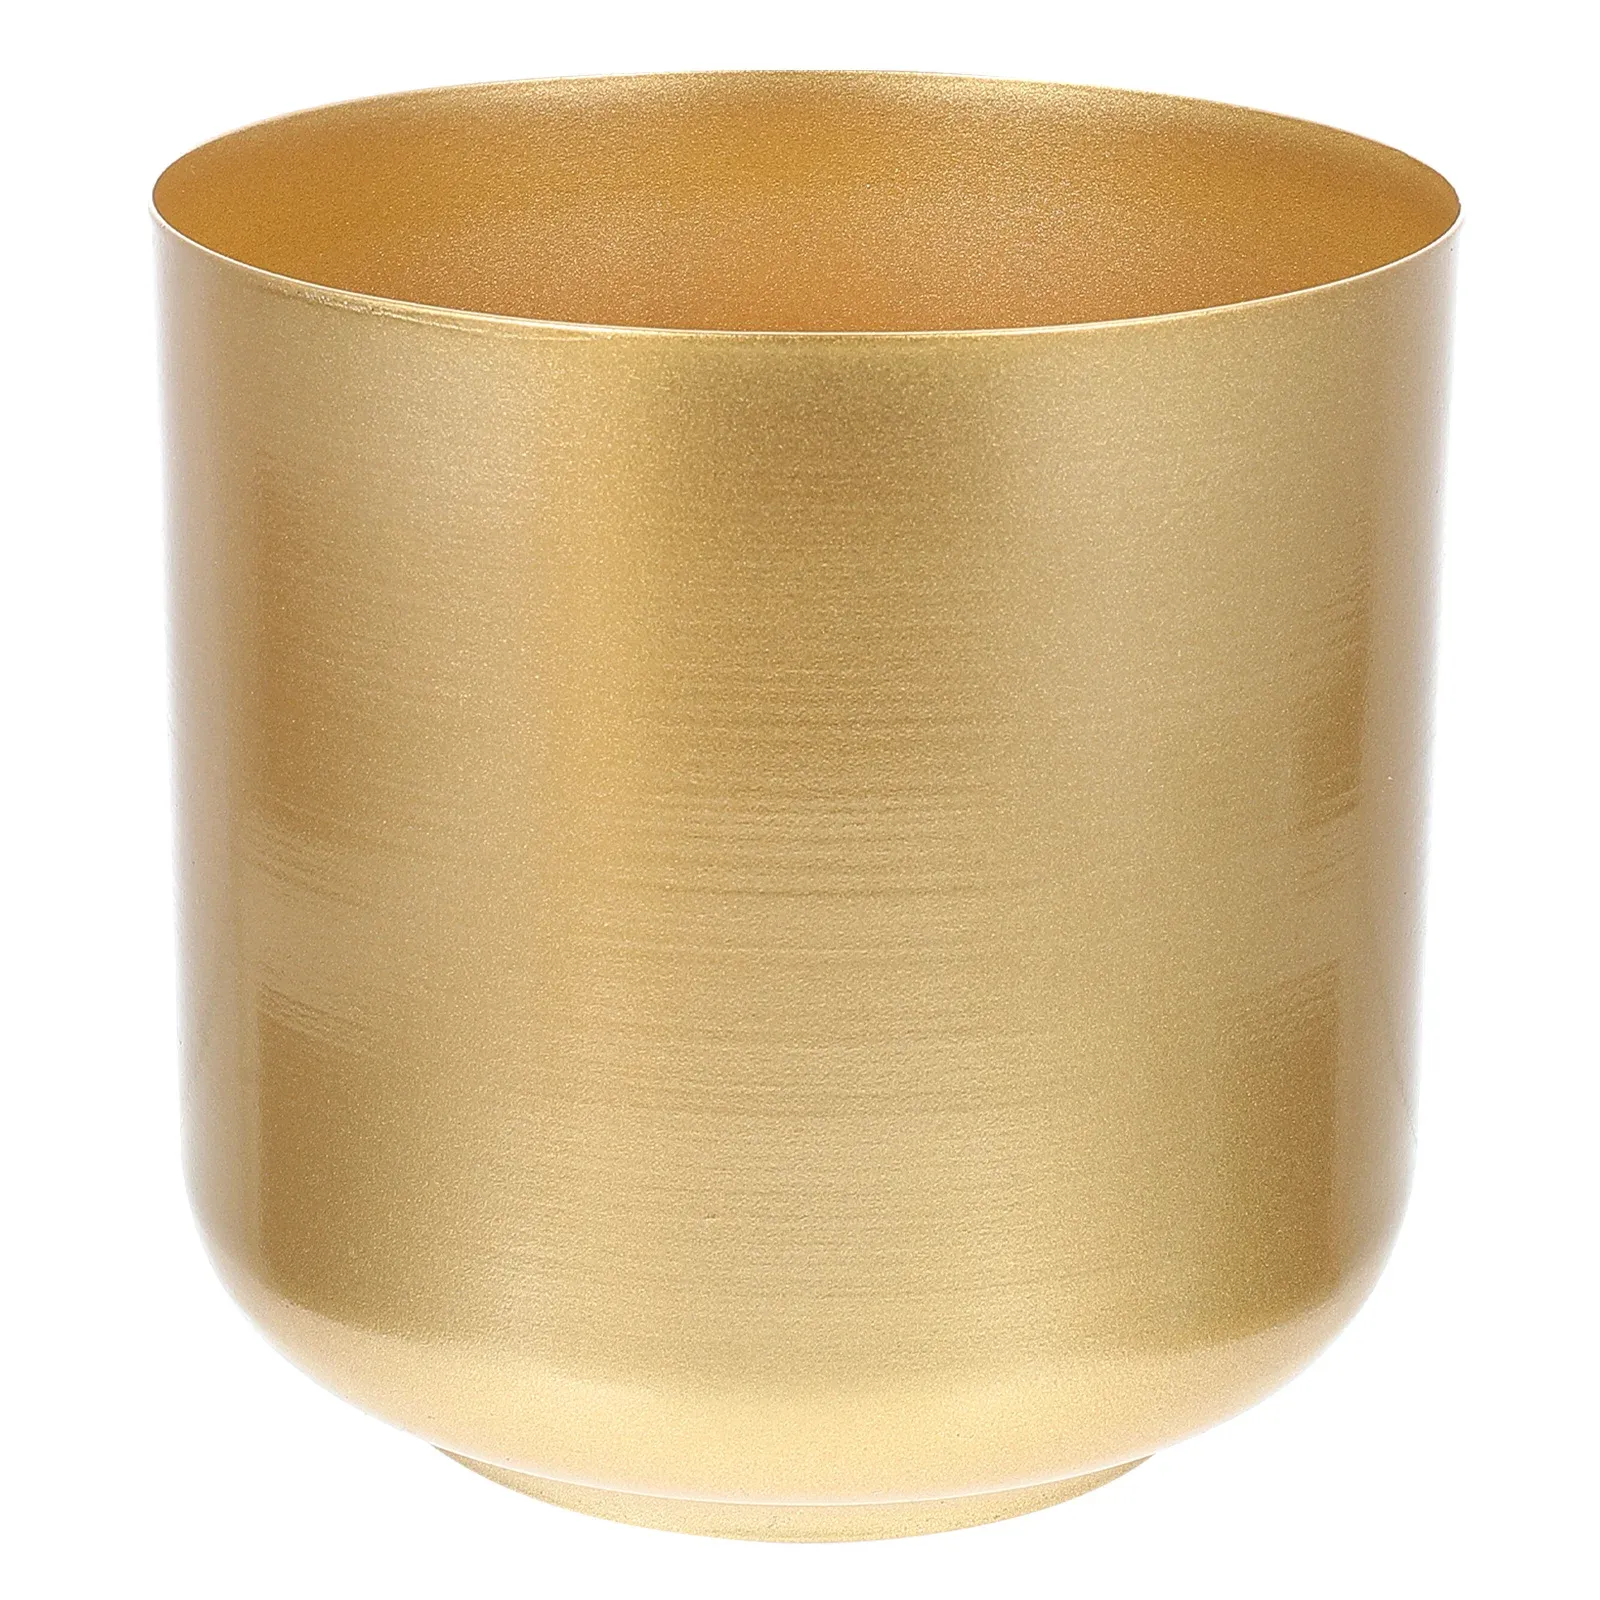 Sadzarki przytul kubek kwiecisty nowoczesny żelazny sadza złoty stół